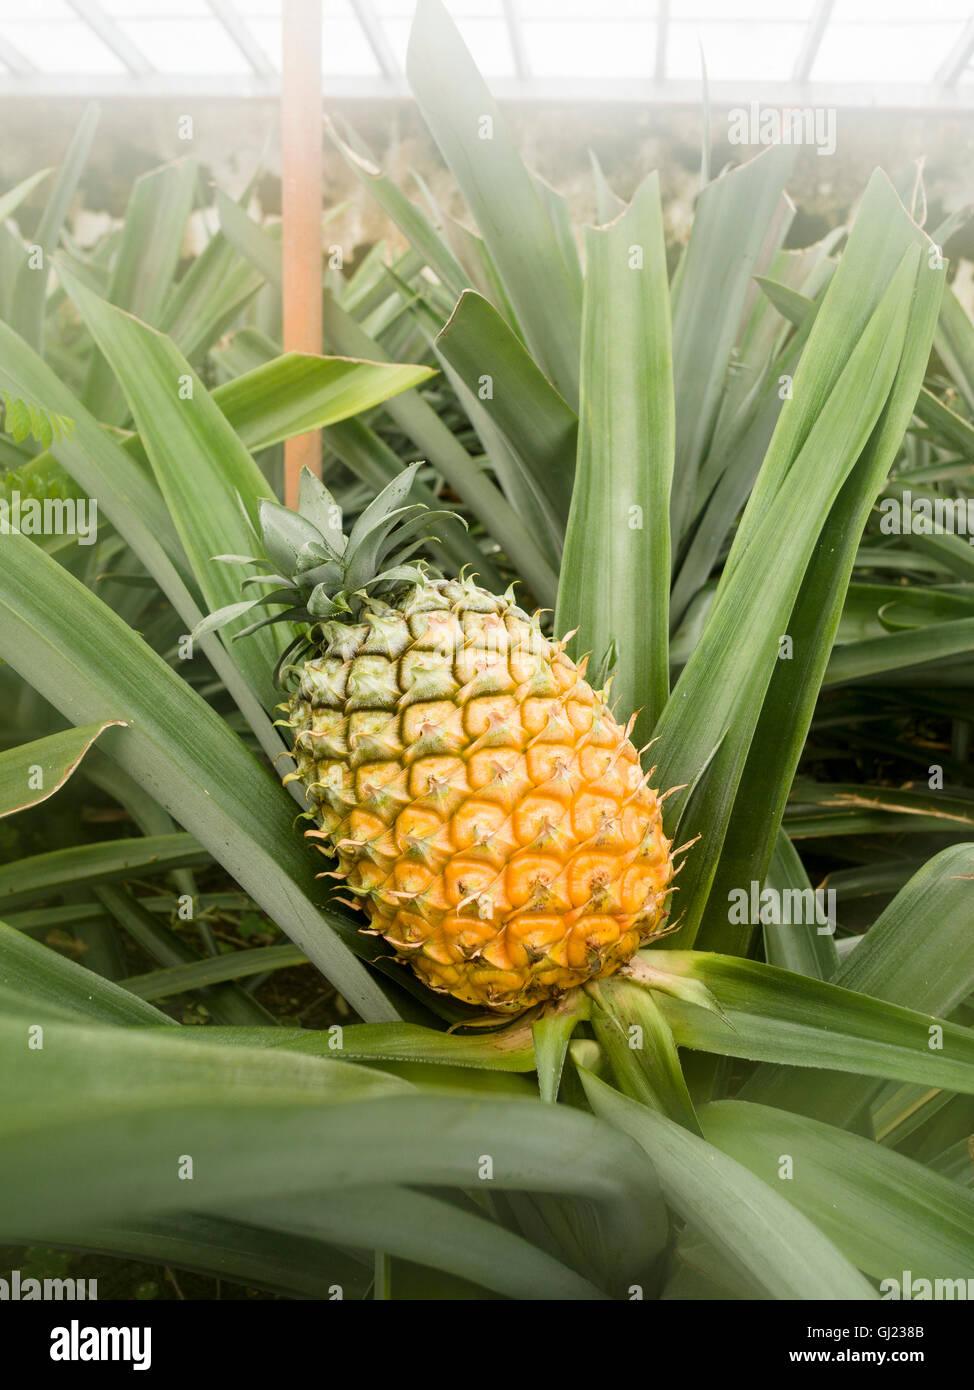 Ananas mûrs dans une serre. Une presque mûres, ananas jaune se trouve inclinée dans son lit de feuillage à l'intérieur d'une serre des. Banque D'Images